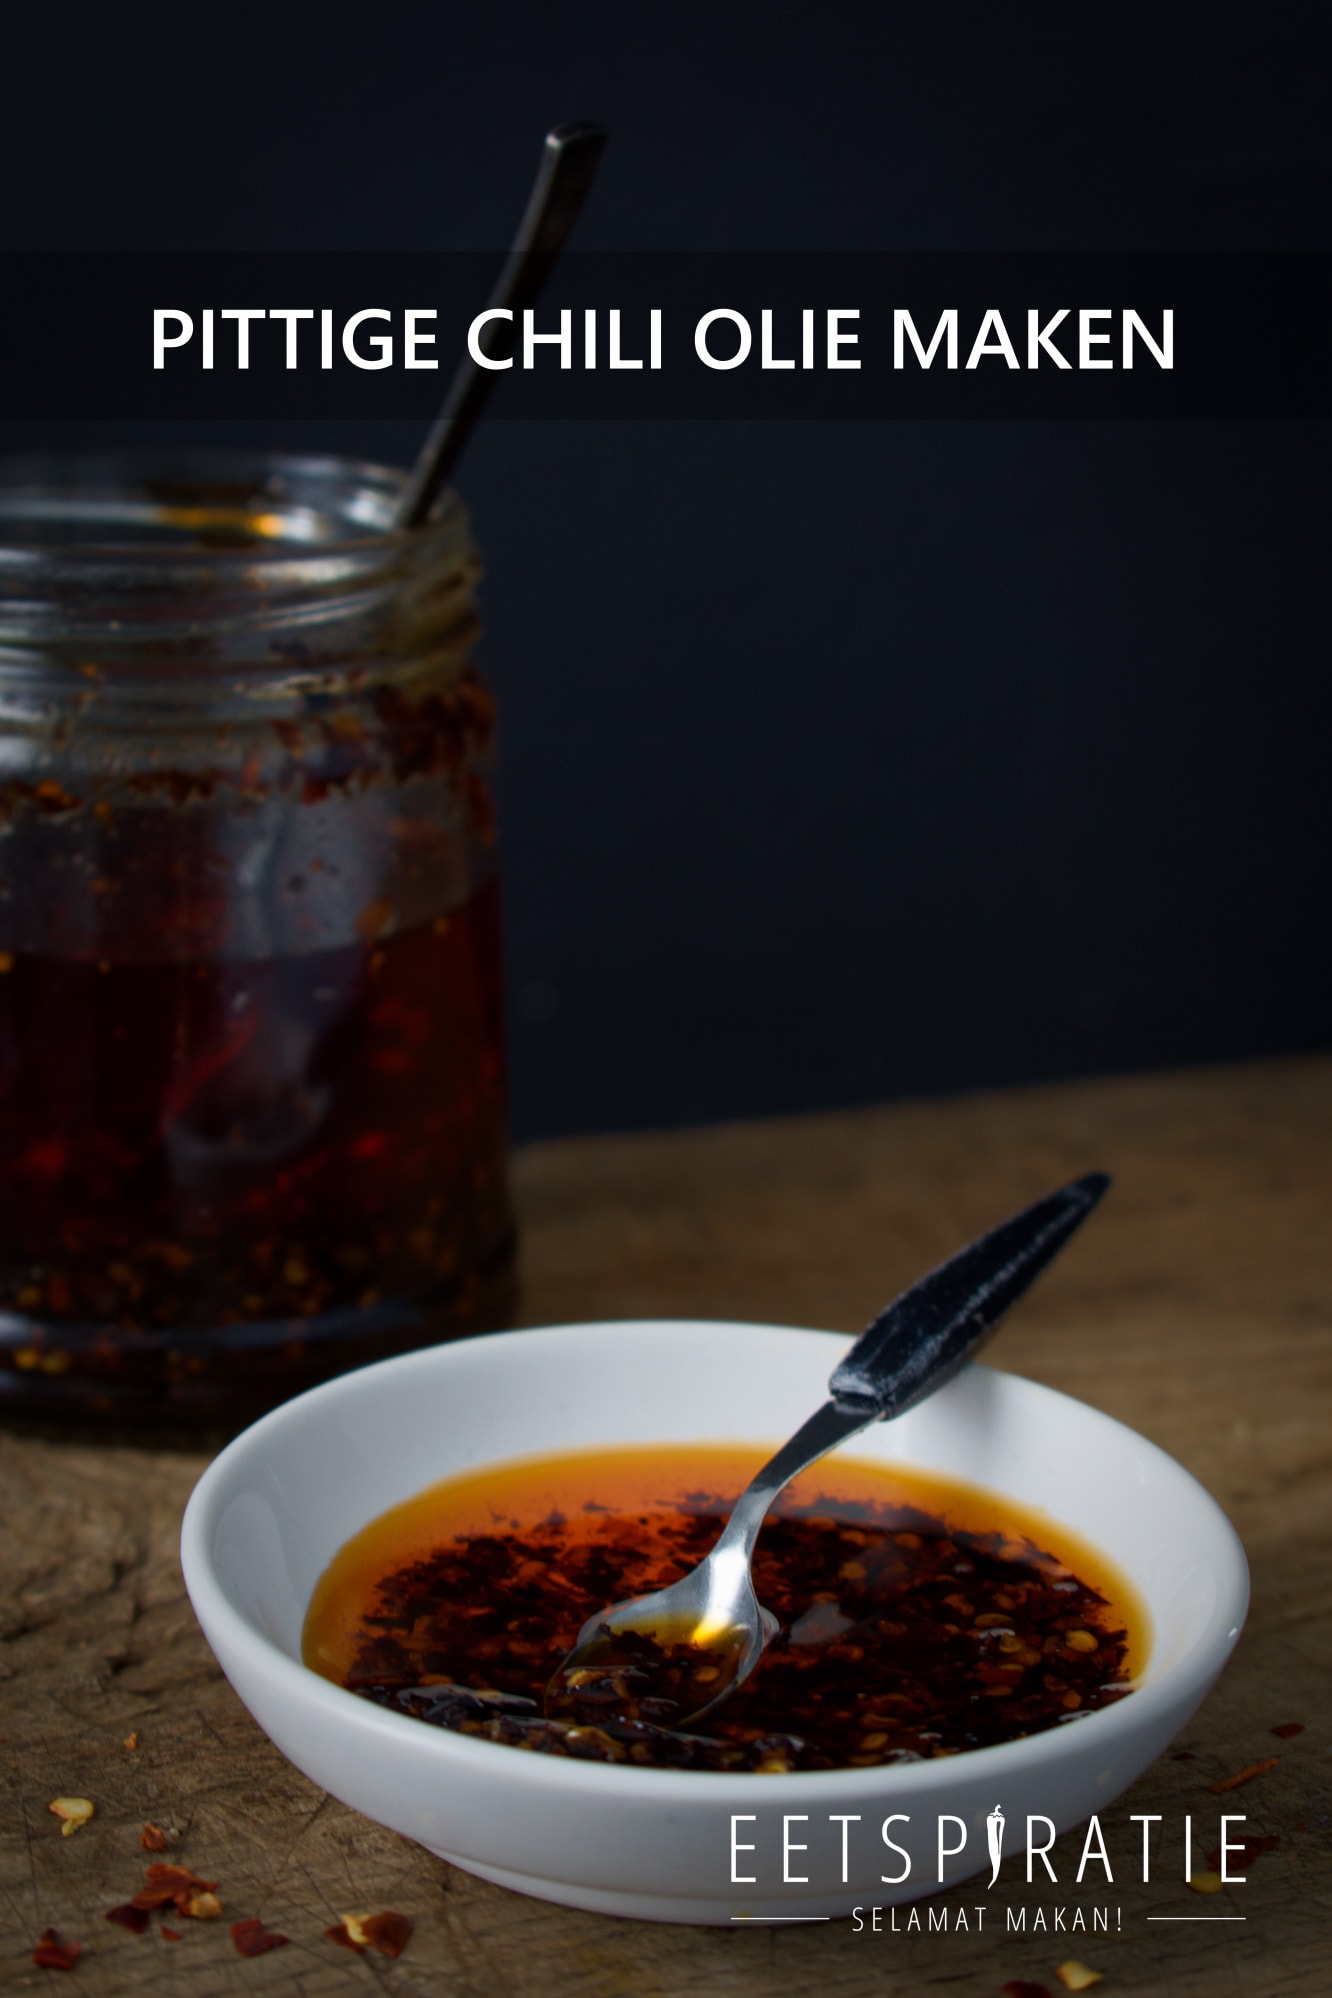 Pittige chili olie maken